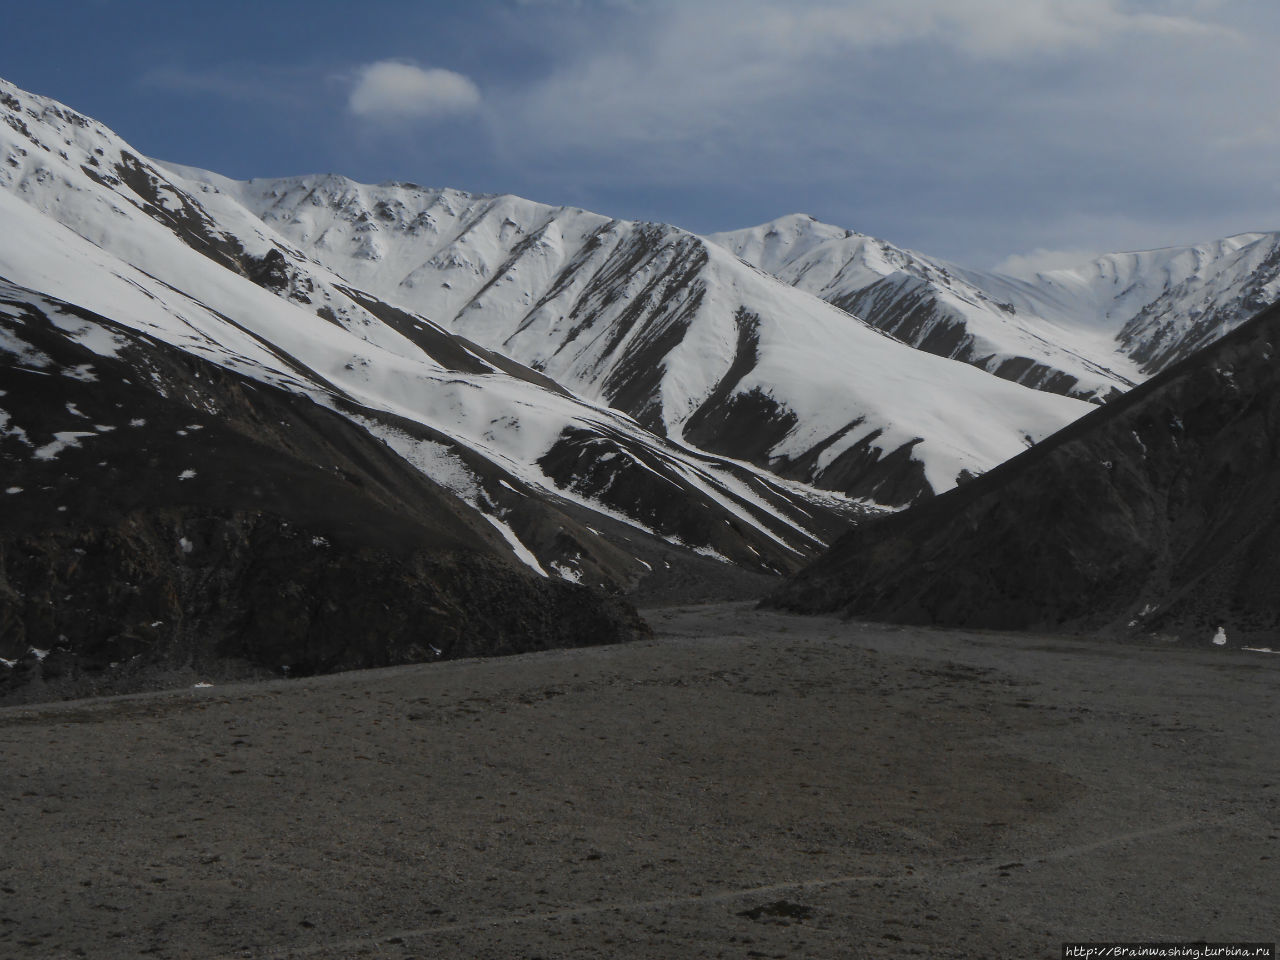 Автостопом по Памирскому тракту. Часть 3. Горно-Бадахшанская область, Таджикистан